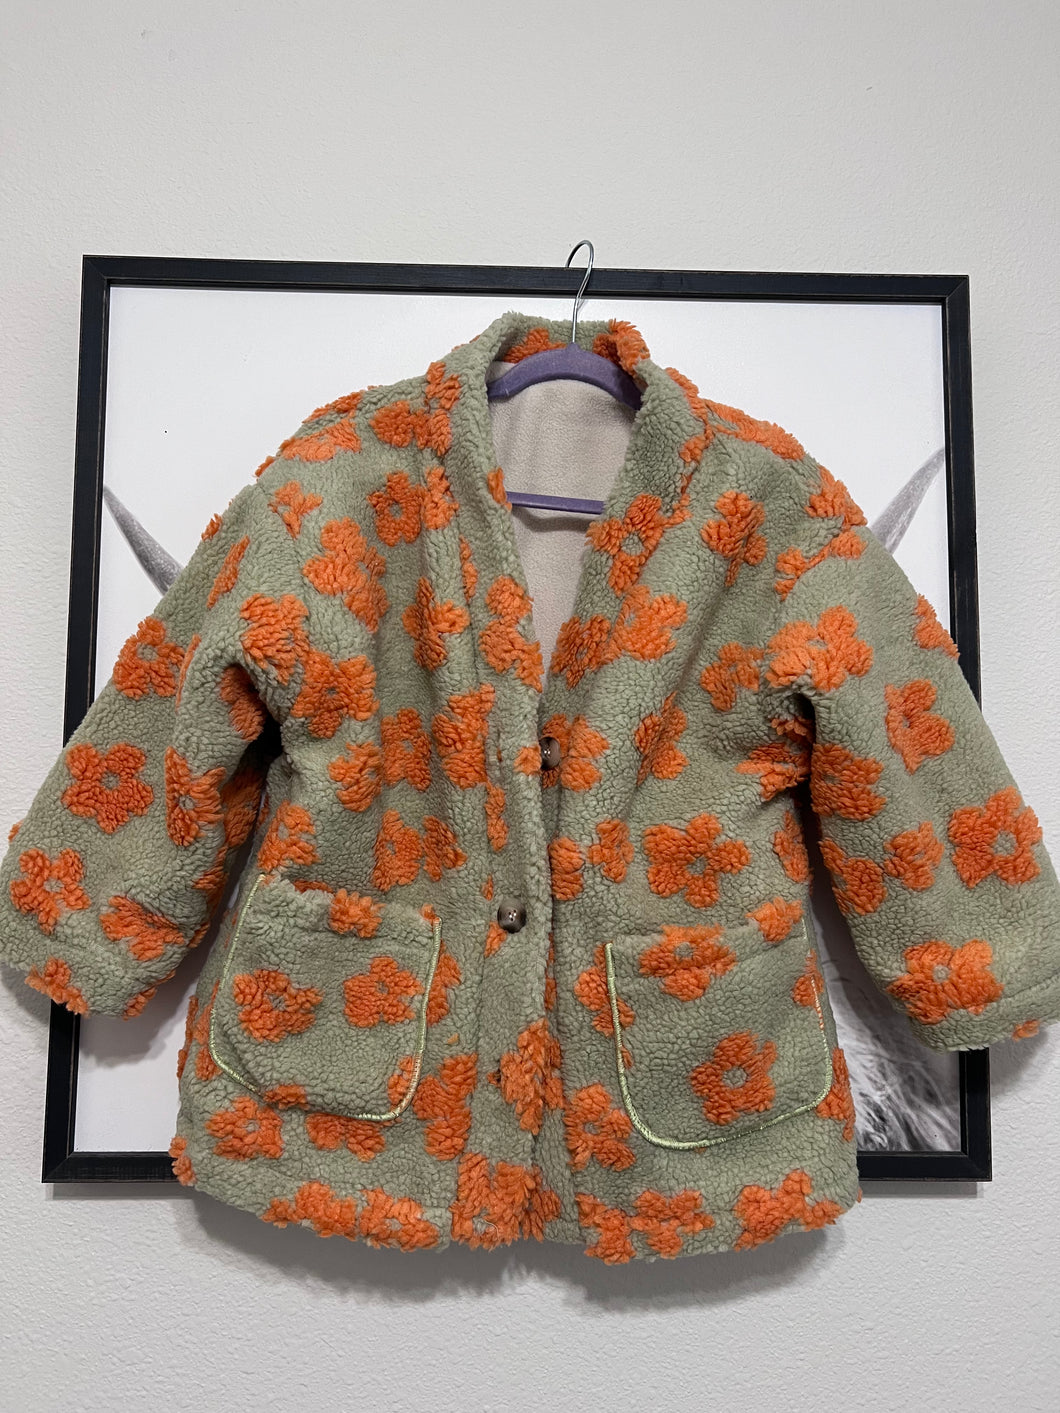 Flower sherpa coat